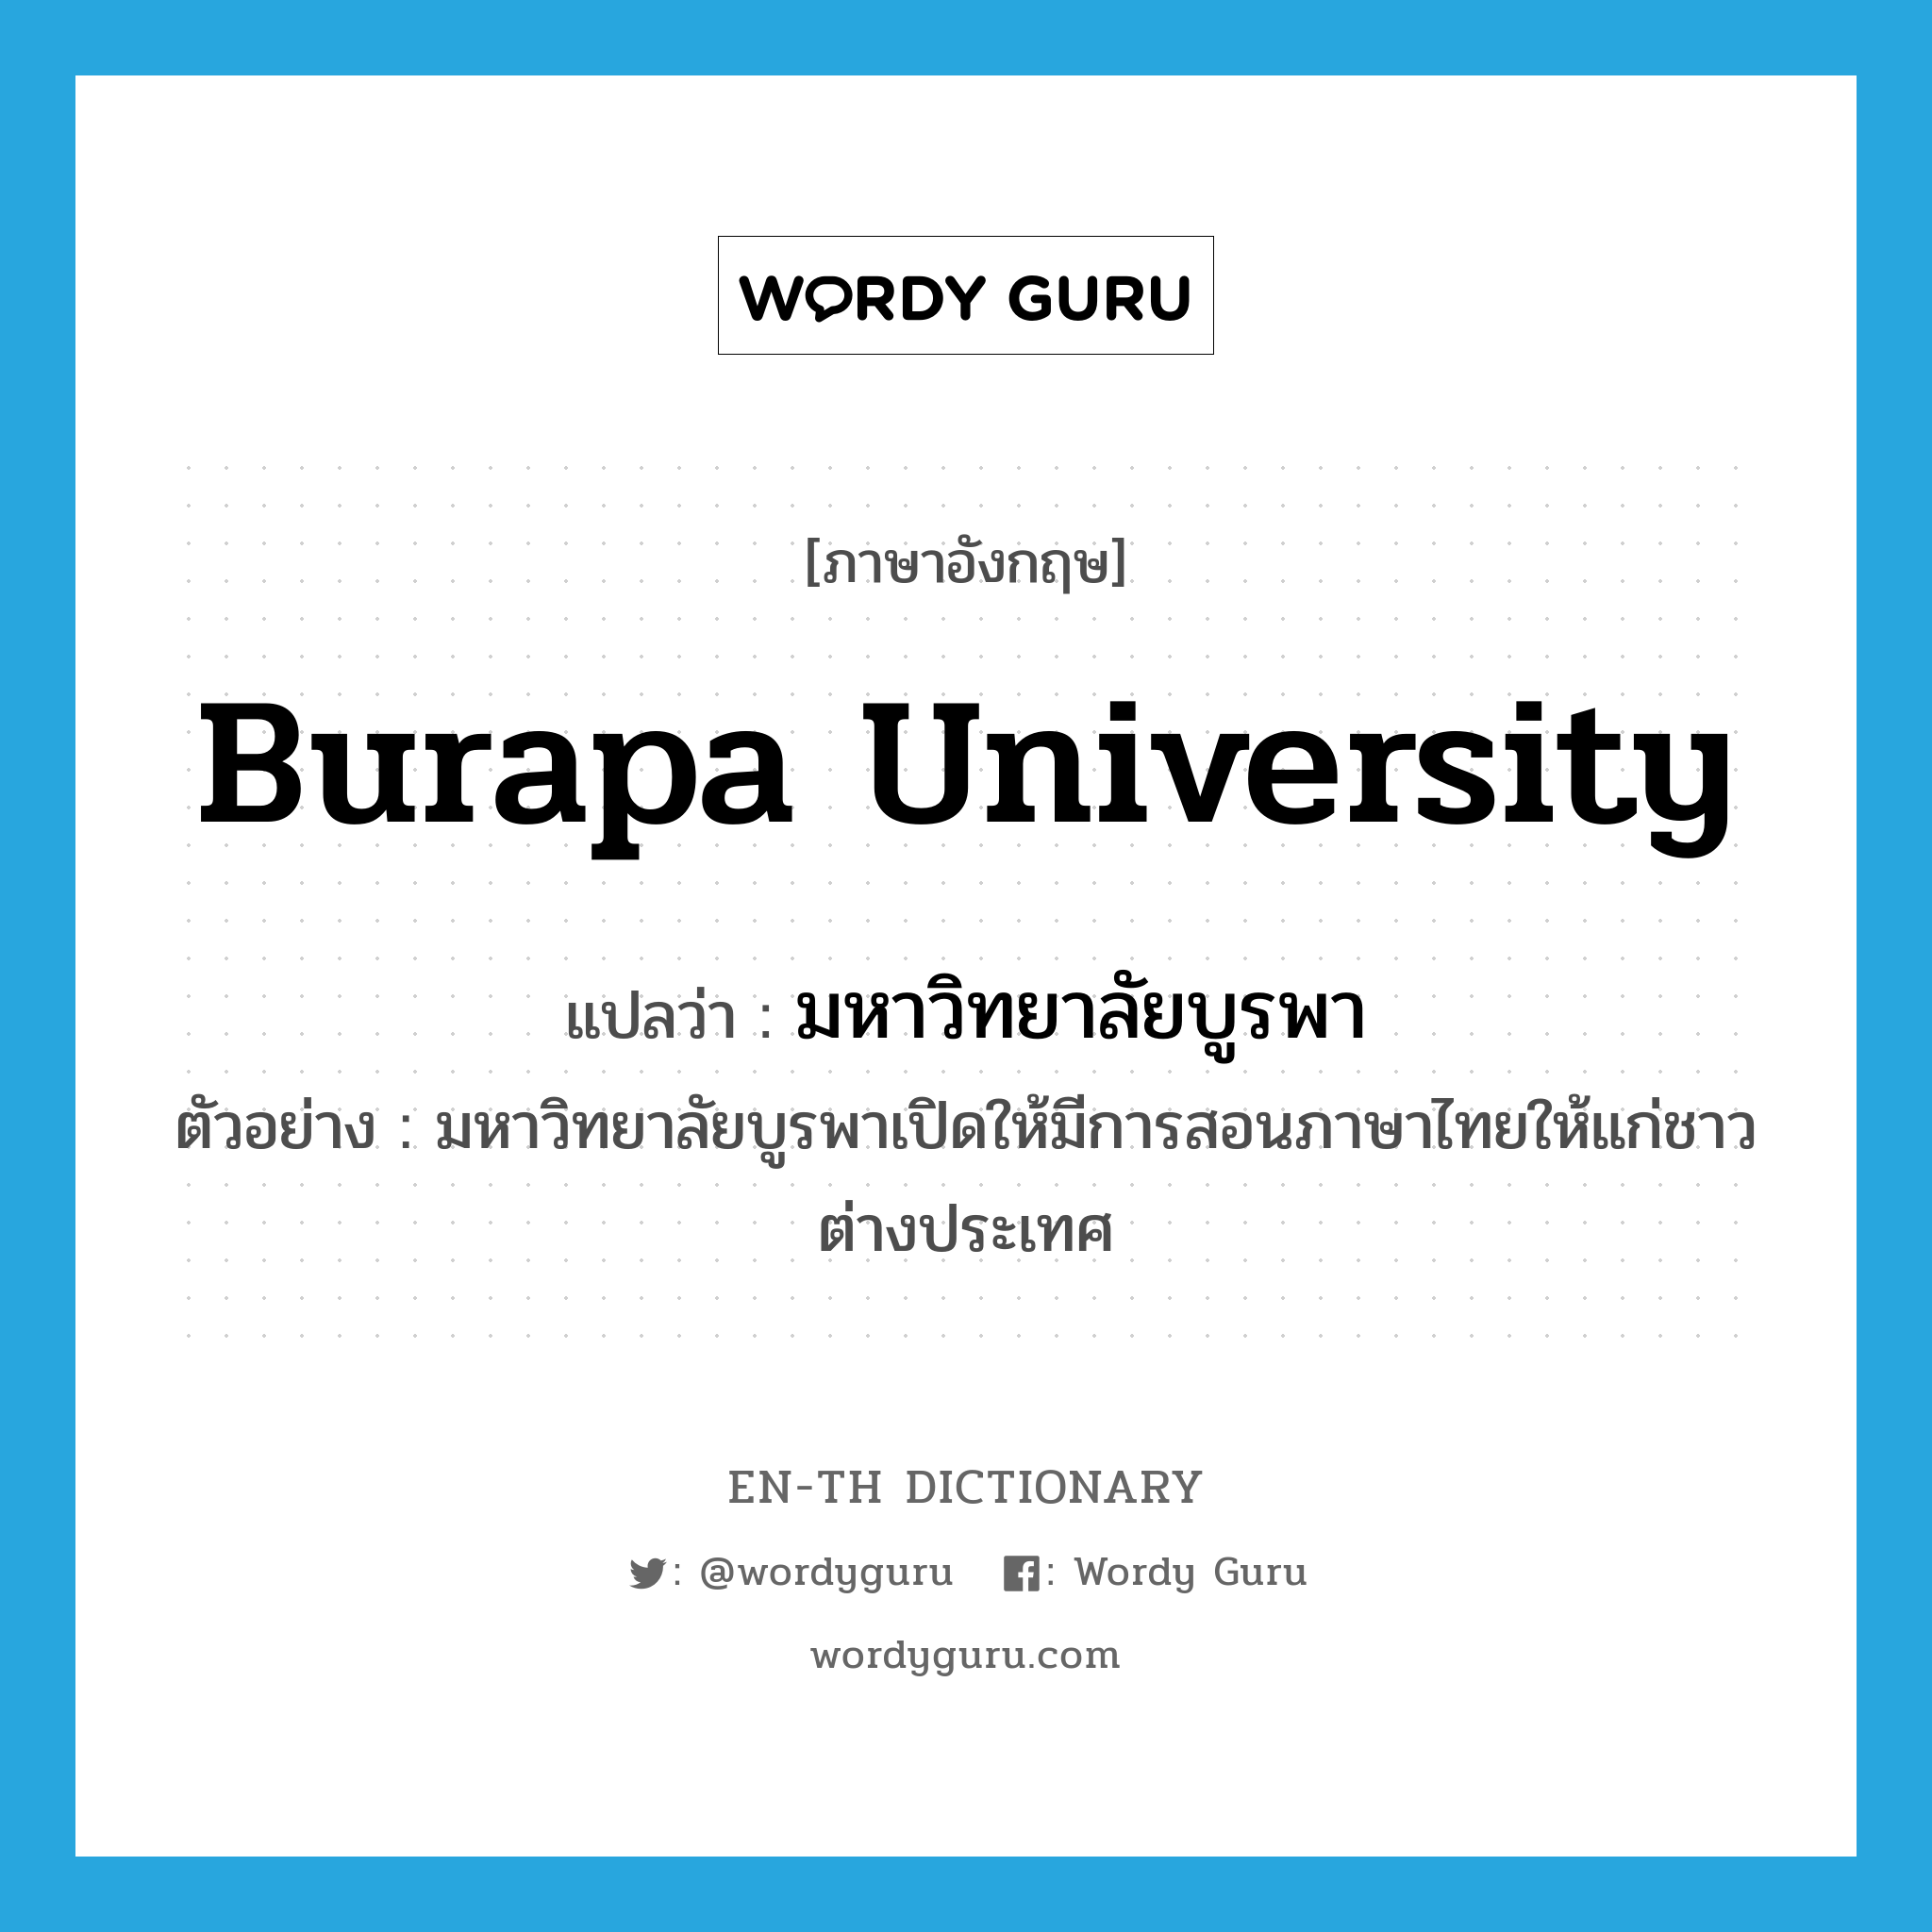 มหาวิทยาลัยบูรพา ภาษาอังกฤษ?, คำศัพท์ภาษาอังกฤษ มหาวิทยาลัยบูรพา แปลว่า Burapa University ประเภท N ตัวอย่าง มหาวิทยาลัยบูรพาเปิดให้มีการสอนภาษาไทยให้แก่ชาวต่างประเทศ หมวด N